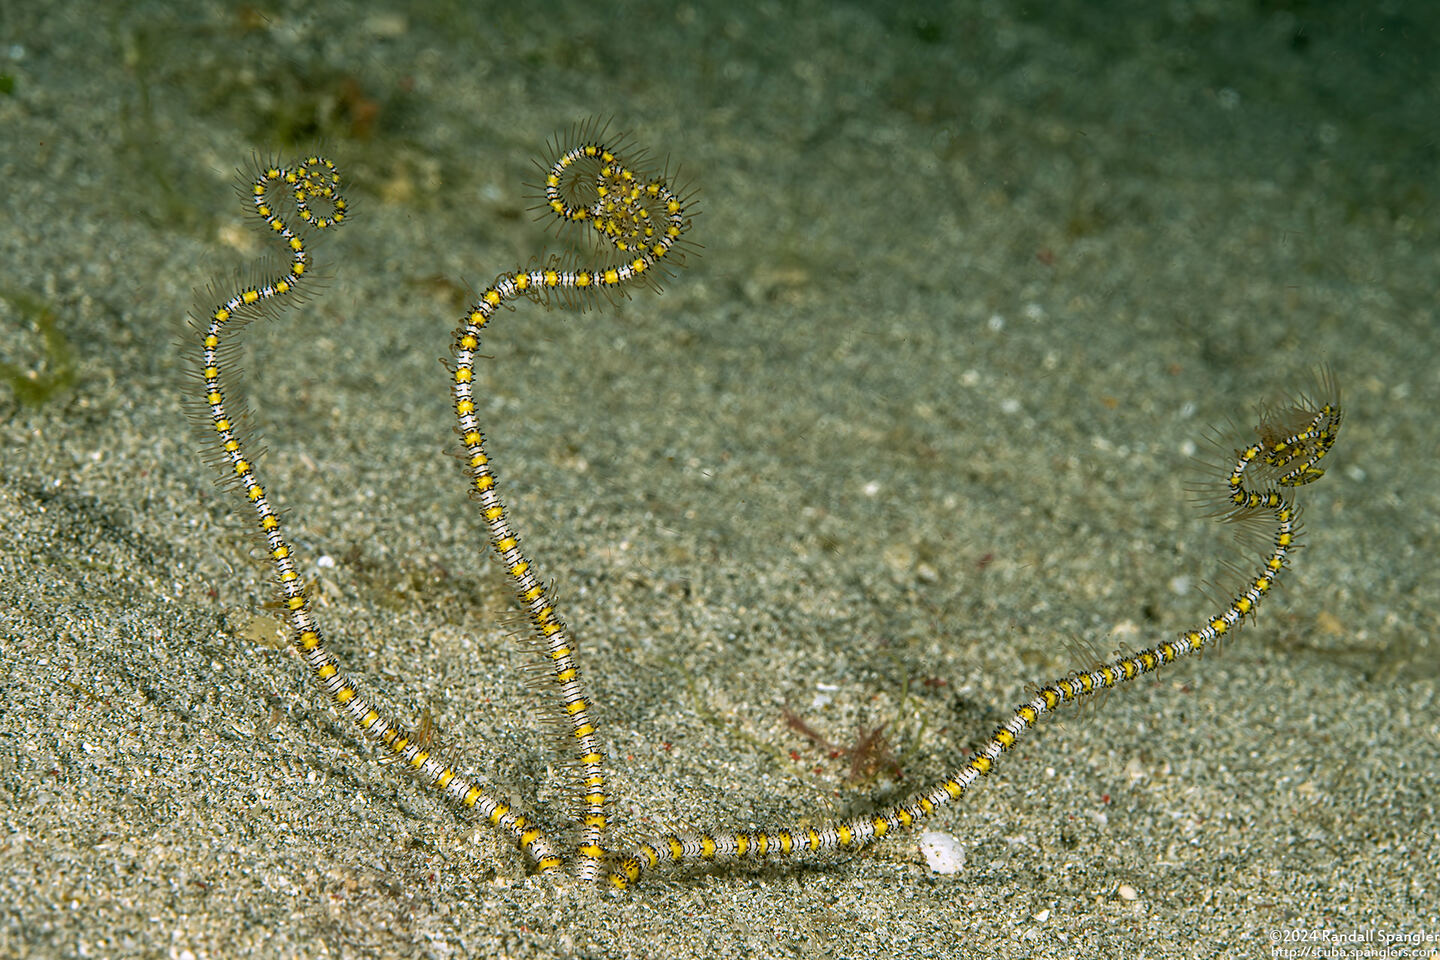 Ophiopsila polyacantha (Underground Brittle Star)